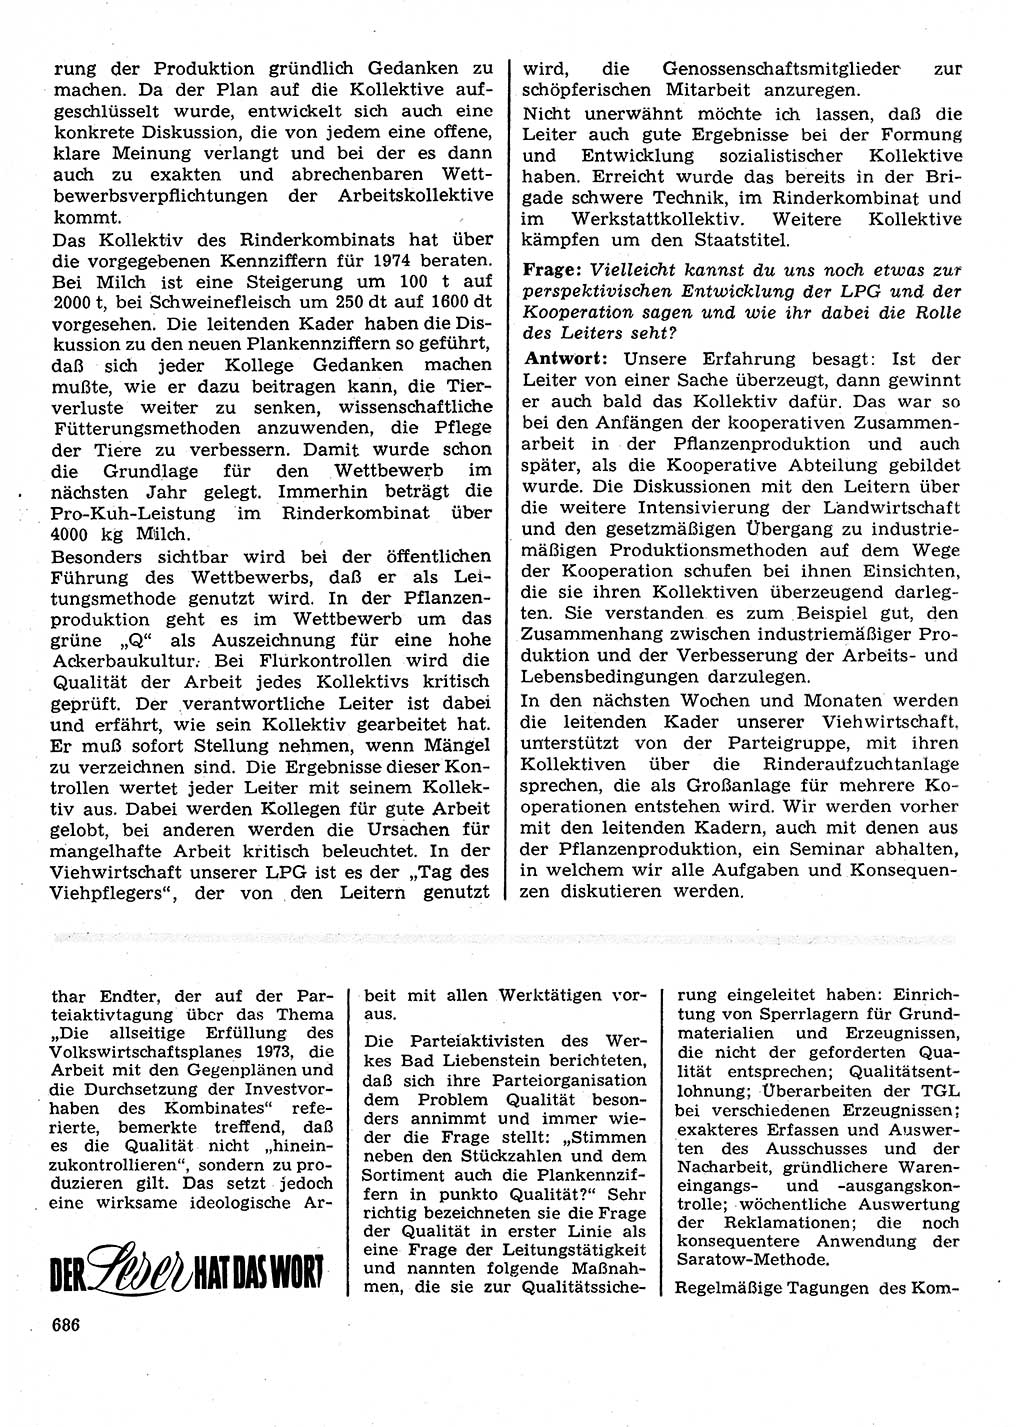 Neuer Weg (NW), Organ des Zentralkomitees (ZK) der SED (Sozialistische Einheitspartei Deutschlands) für Fragen des Parteilebens, 28. Jahrgang [Deutsche Demokratische Republik (DDR)] 1973, Seite 686 (NW ZK SED DDR 1973, S. 686)